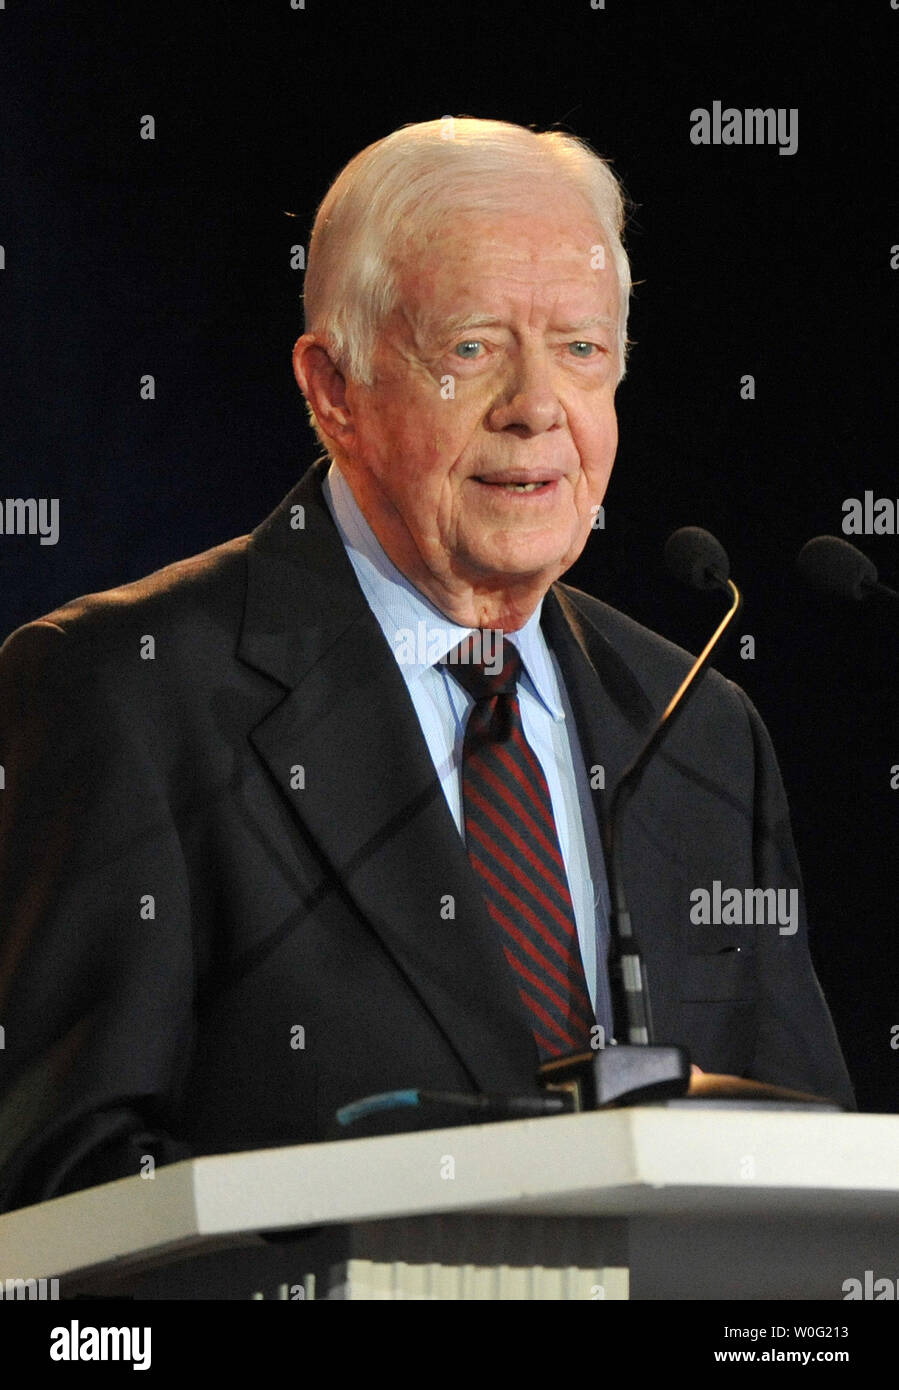 El ex Presidente Jimmy Carter ofrece comentarios a ¡un millón de gracias! Hábitat para la humanidad gala que honra la vida y servicio de Jimmy y Rosalynn Carter, en Washington el 4 de octubre de 2010. UPI/Kevin Dietsch Foto de stock